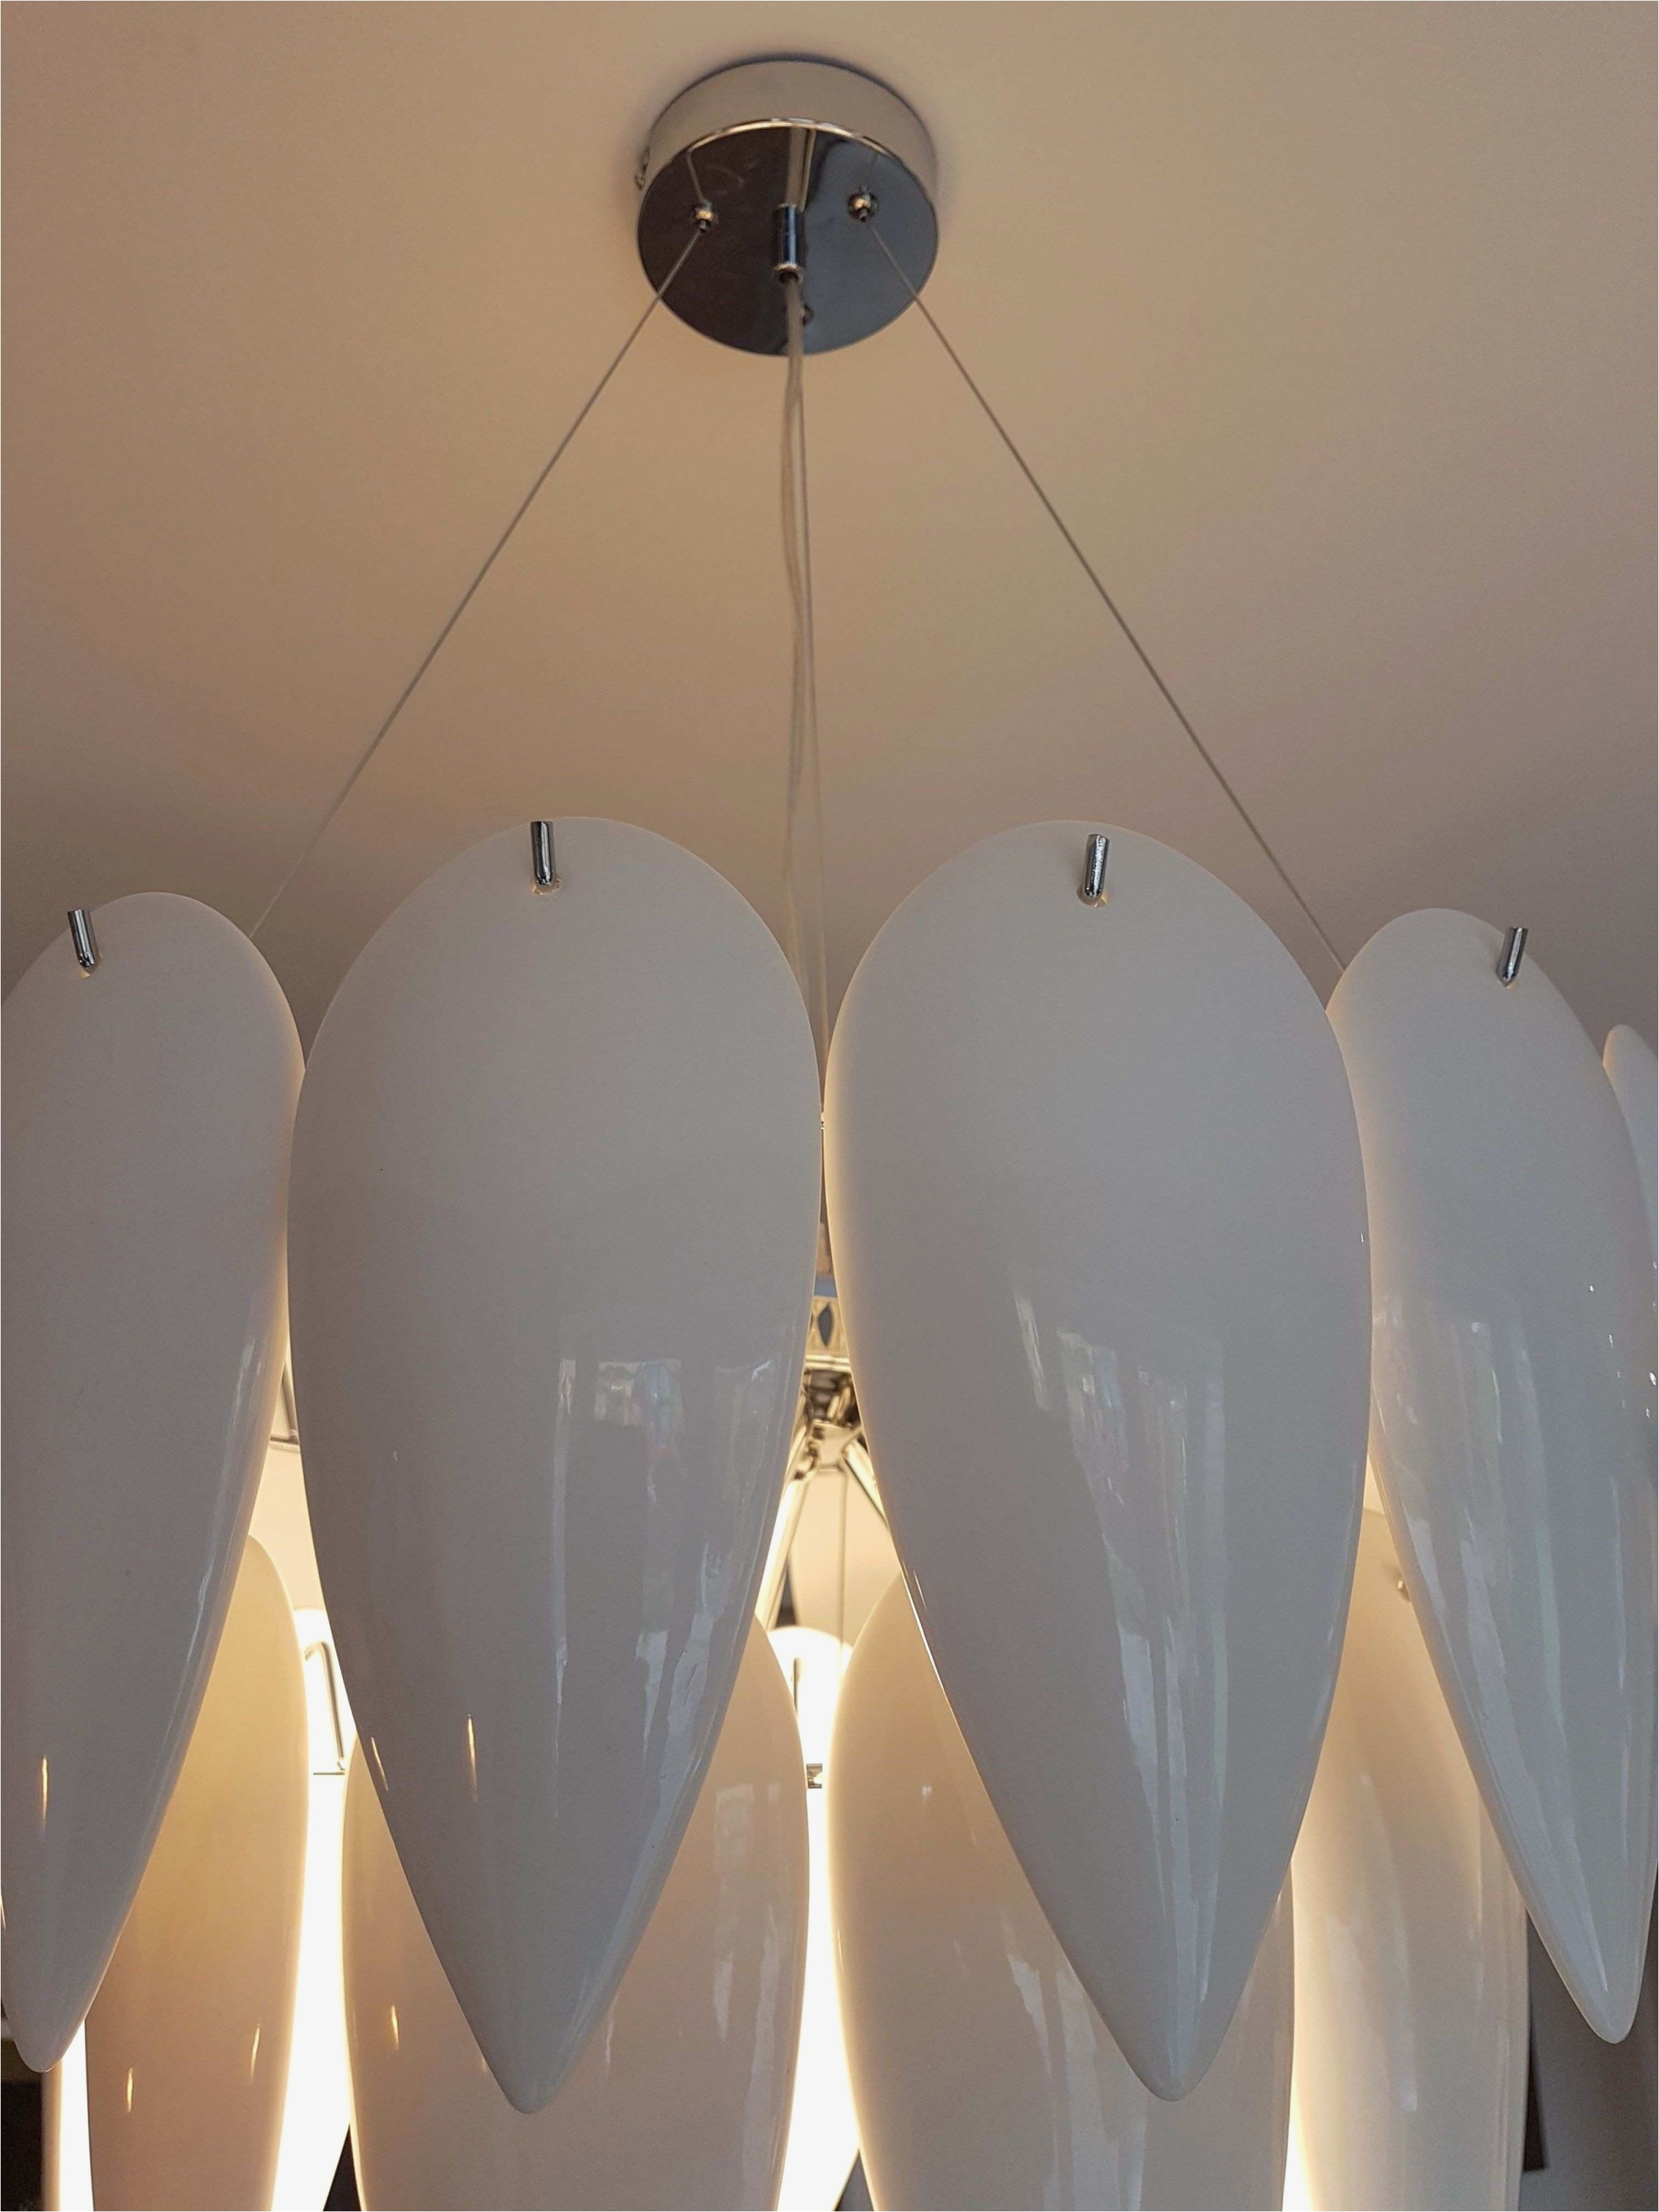 top best sad lamp interior design for home remodeling fantastical under home interior